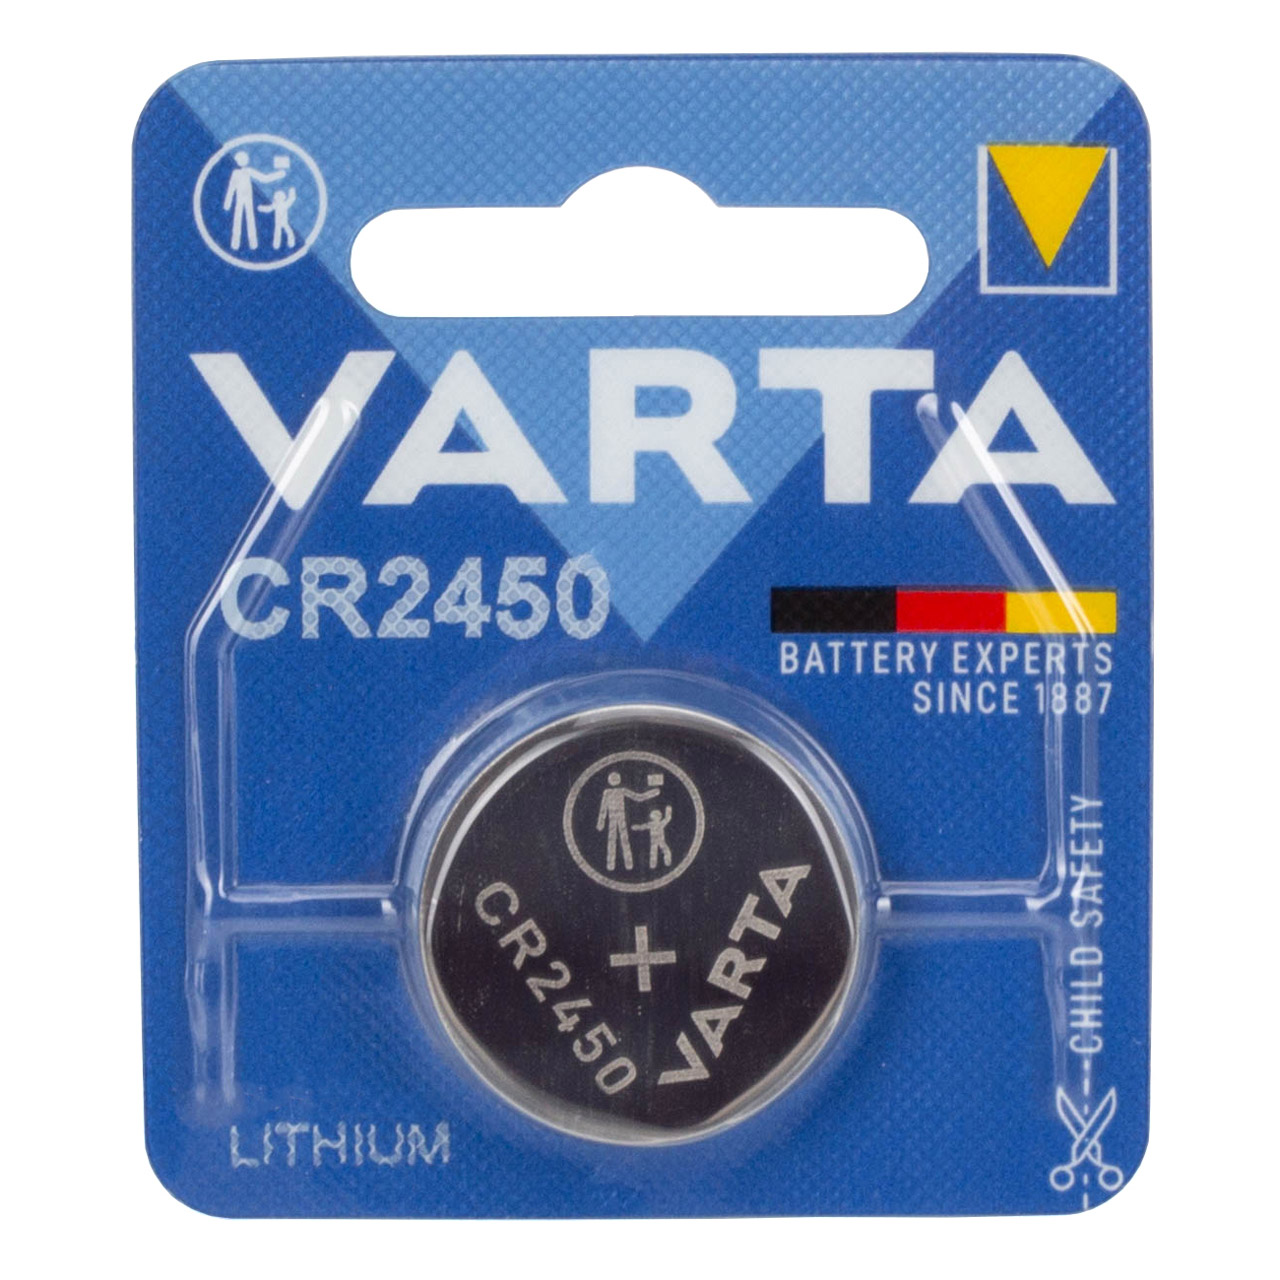 10x VARTA Lithium 3V CR2450 Knopfzelle Knopfbatterie Batterie (MHD 11.2032)